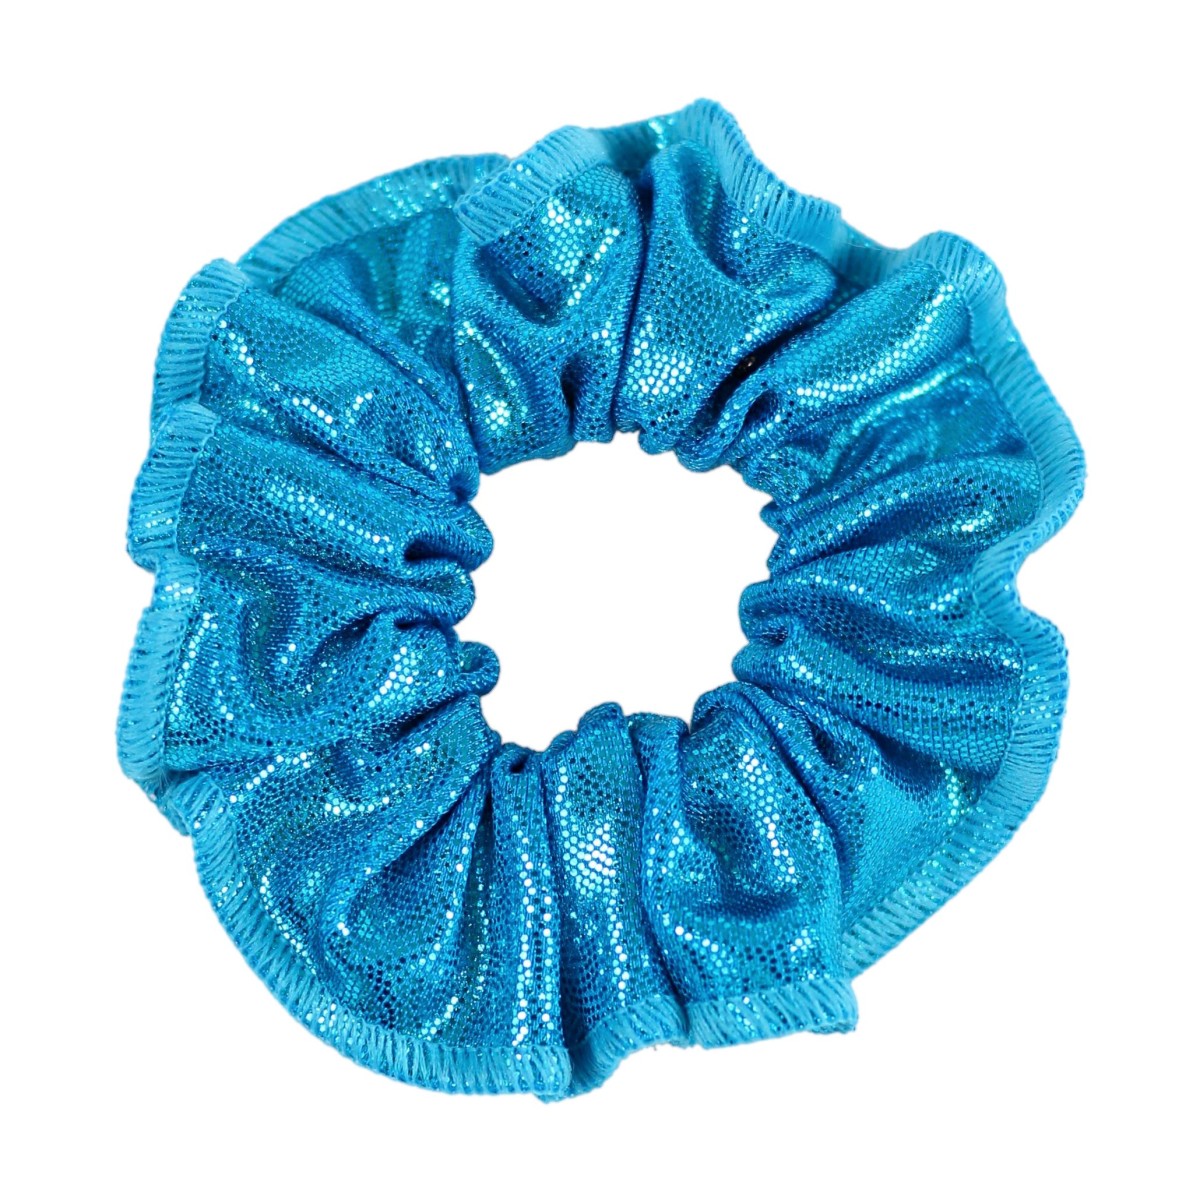 Hairscrunchie, turquoise shiny